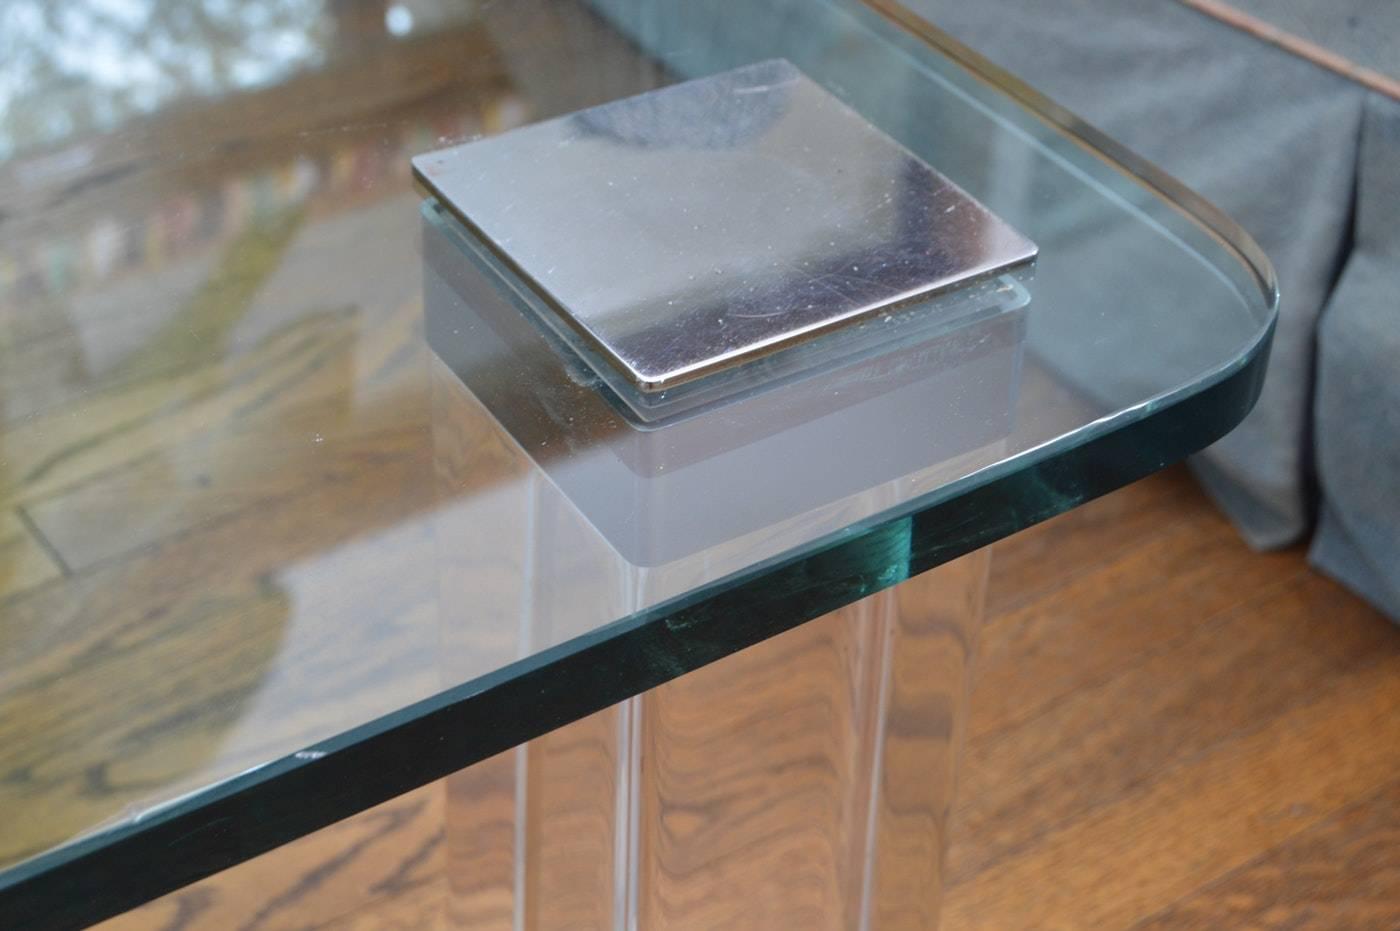 Belle table basse conçue et fabriquée dans les années 1970 et exécutée en Lucite et nickel poli avec un beau plateau en verre.
La table a des pieds carrés de 3 pouces en Lucite, coiffés d'inserts en nickel poli qui maintiennent le verre et les